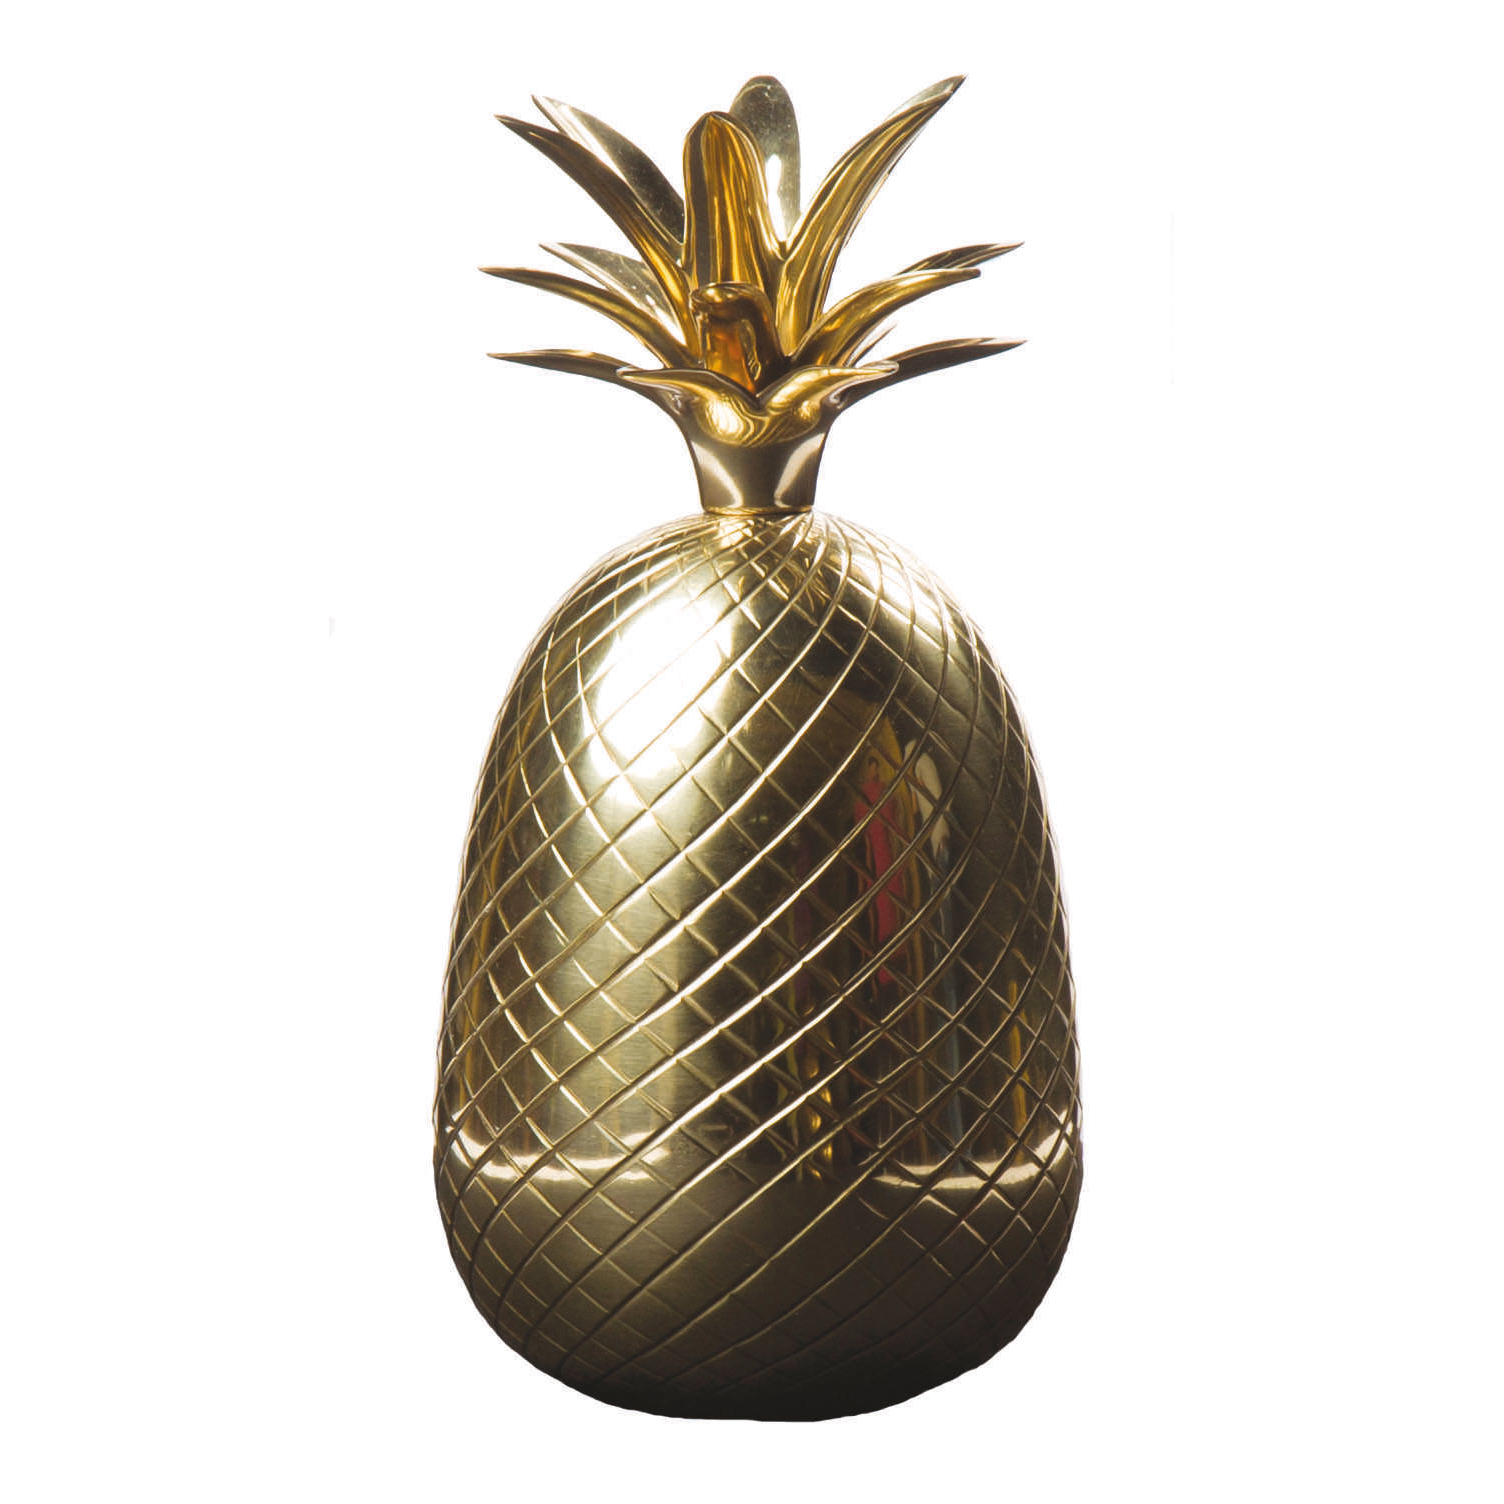 Pineapple Artifact by Kanchi